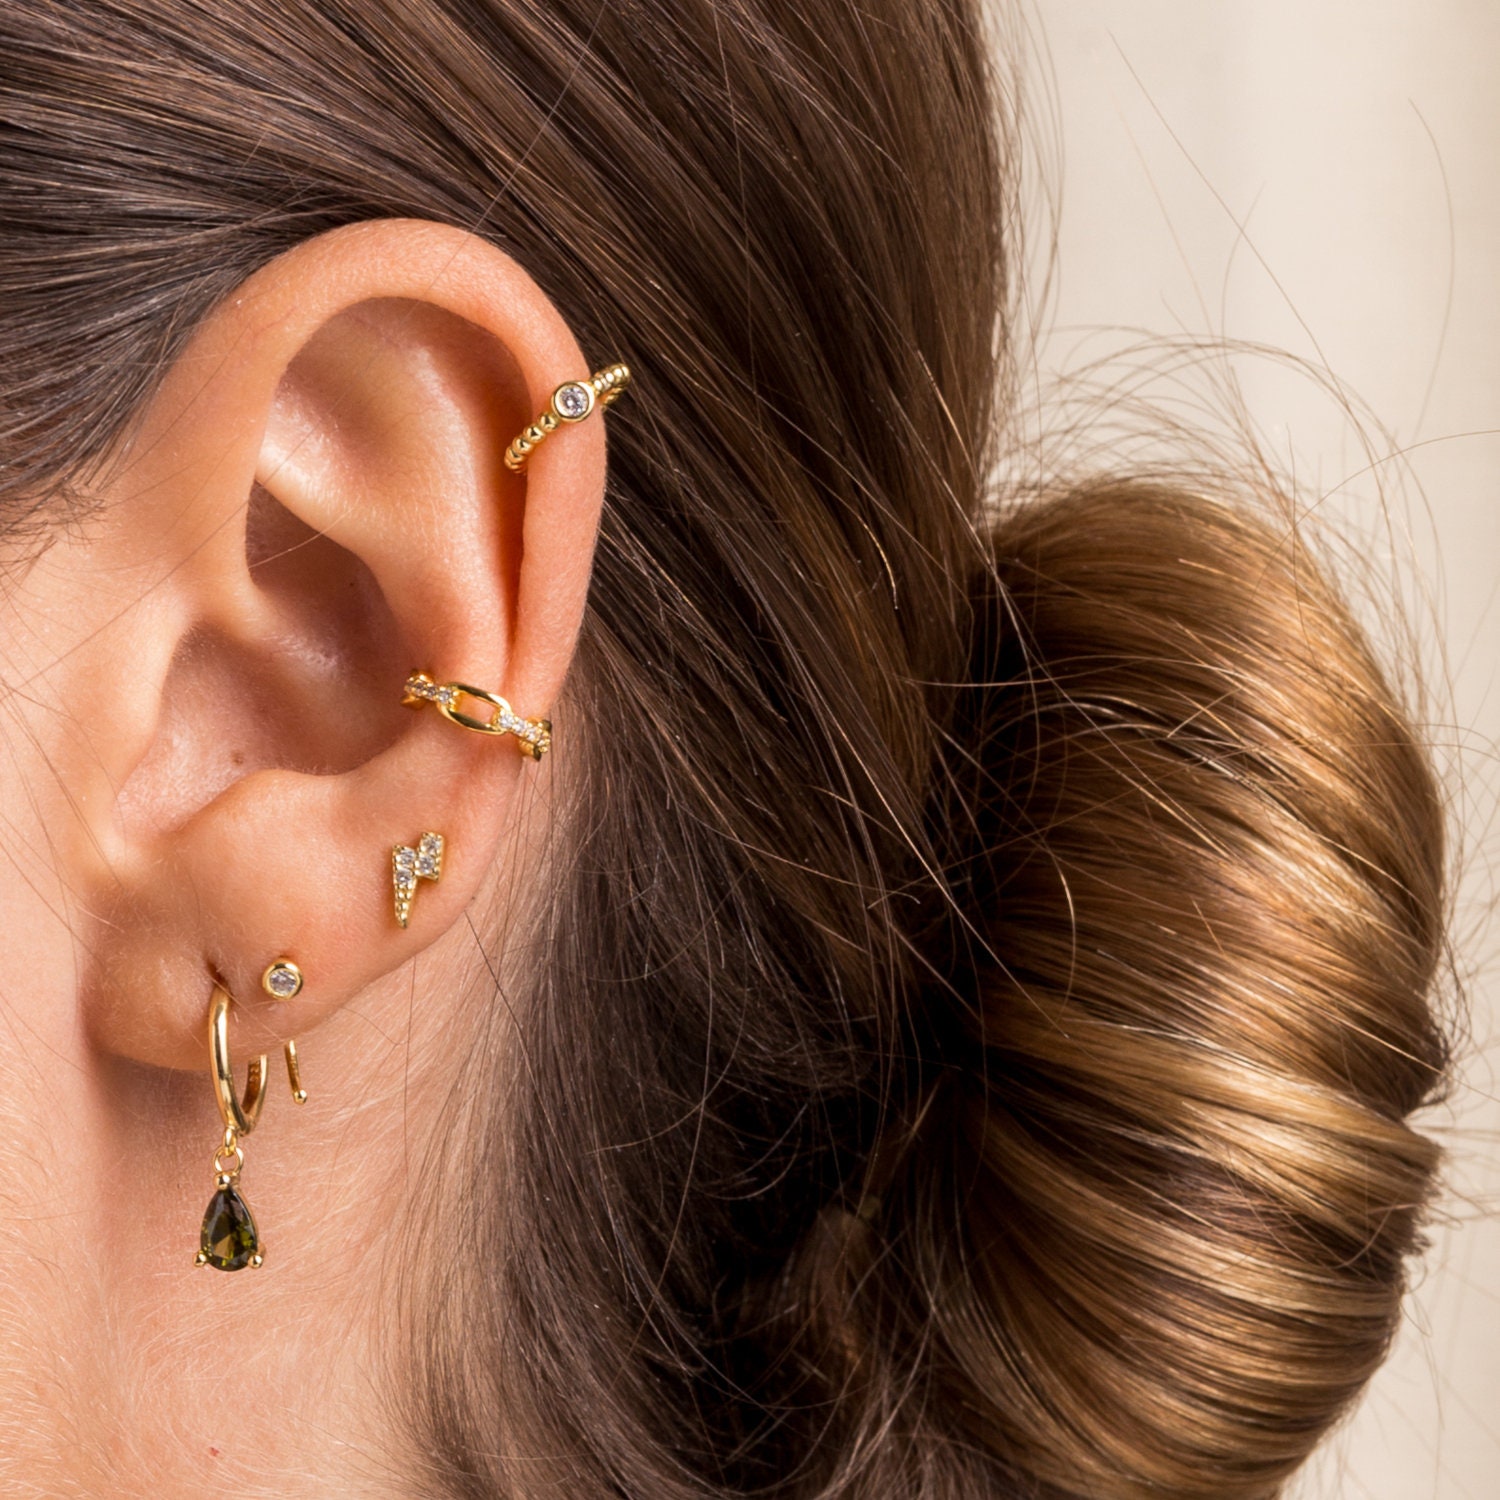 trendy ear cuff earrings